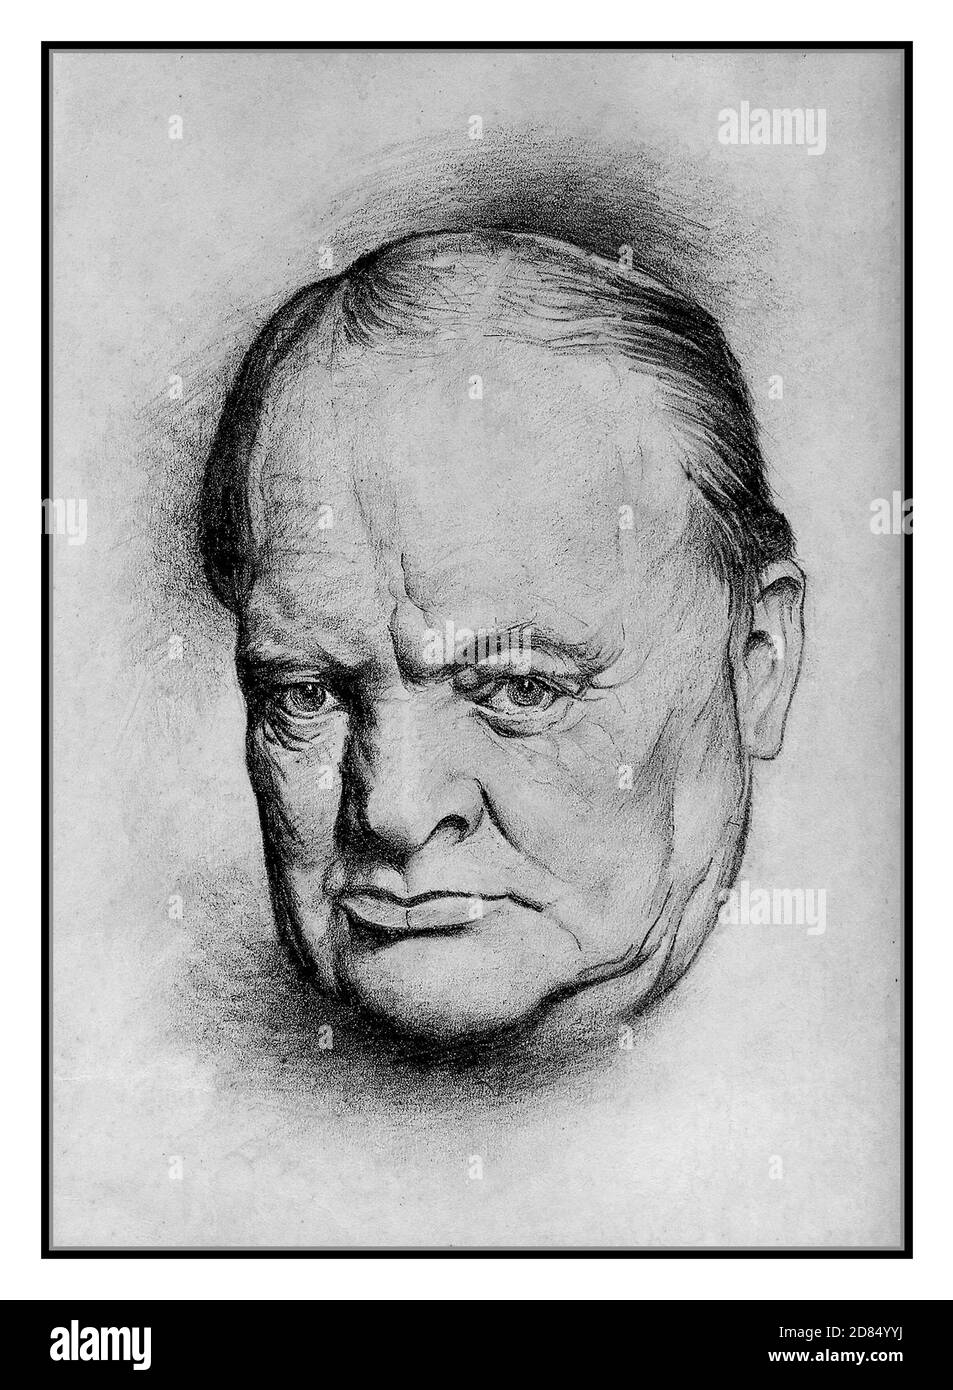 Archiv WK2 Winston Churchill inspirierender Führer und Premierminister des Zweiten Weltkriegs Portrait Kopf & Schultern B&W Zeichnung von Lyn Ott 1942. Des britischen Kriegsministers Churchill Lyn Ott (1926-1998) war ein amerikanischer Maler. Stockfoto